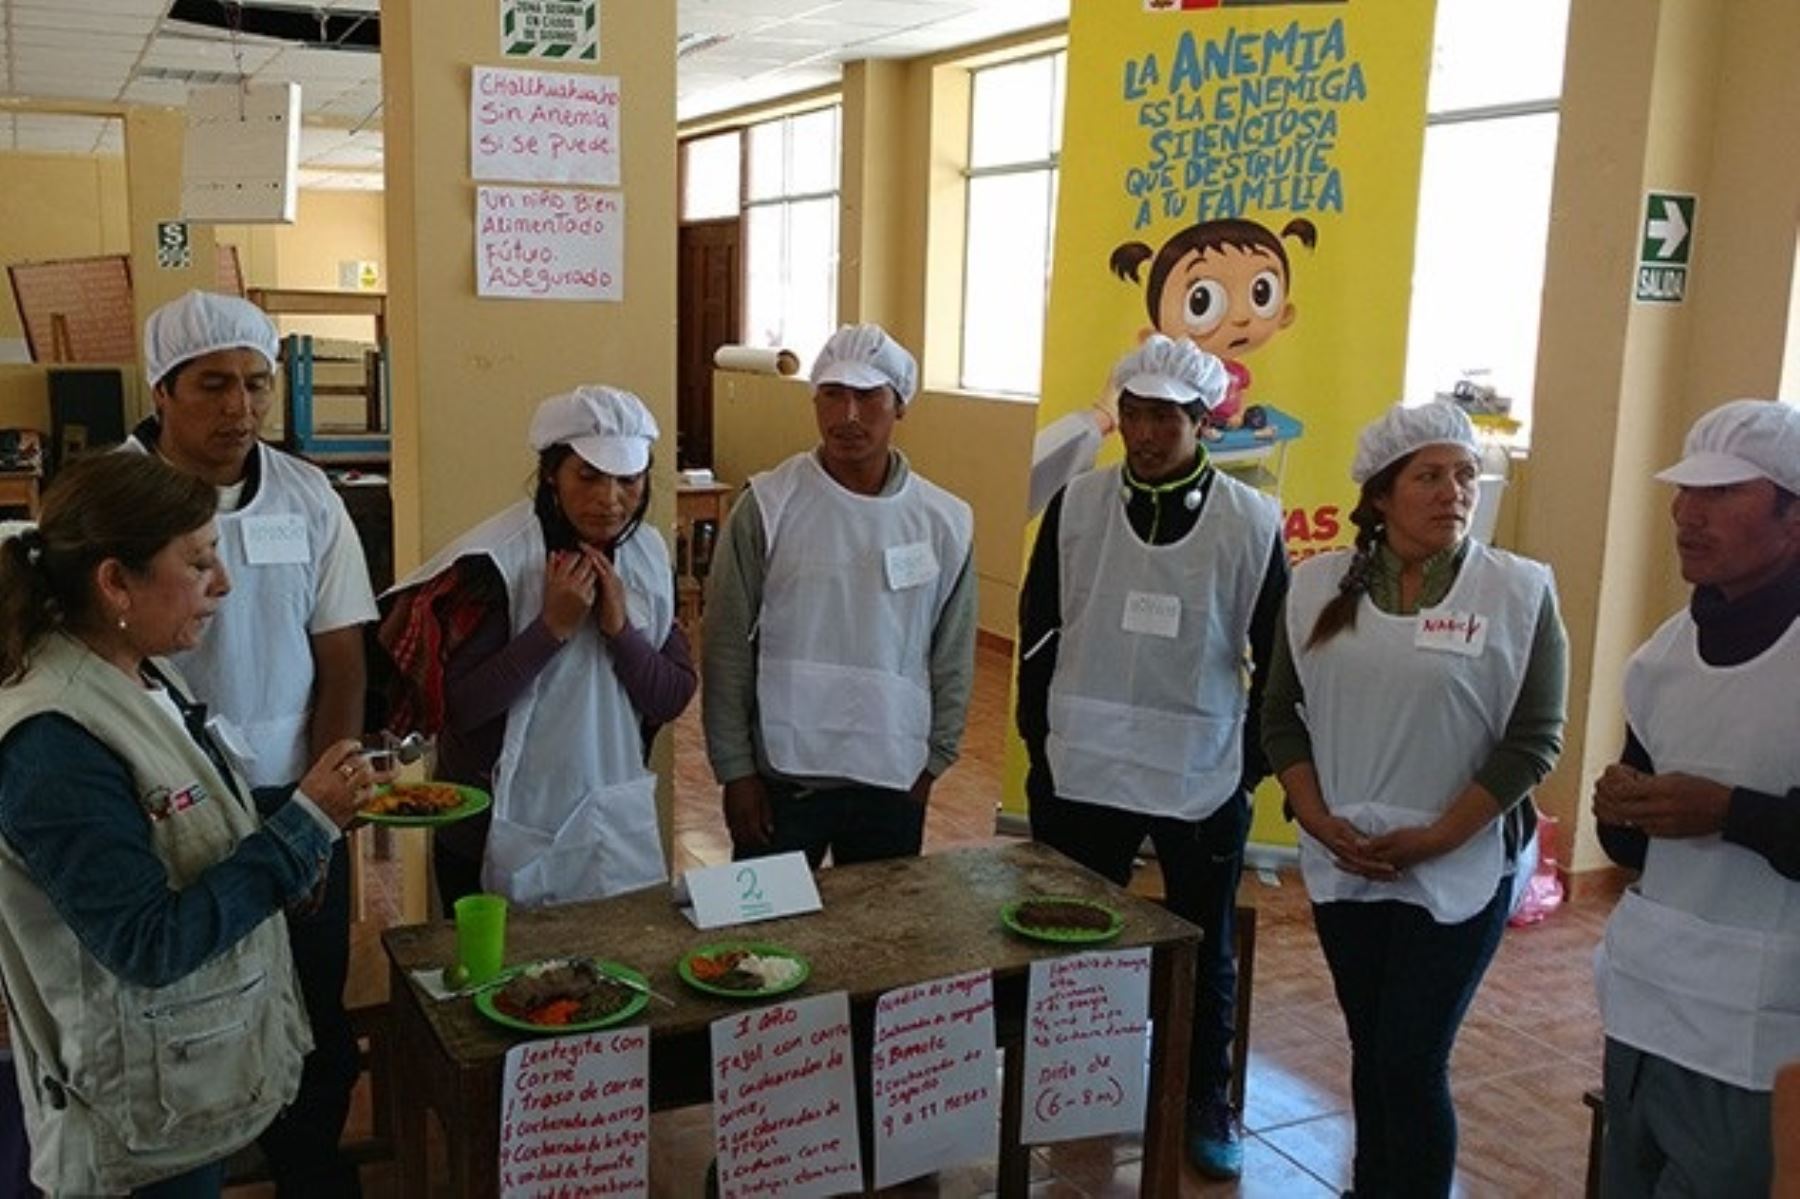 Con el objetivo de fortalecer la lucha contra la anemia en la región Apurímac, el Ministerio de Salud (Minsa) realizó diversos talleres de capacitación para el personal de salud de los distritos de Mara y Calhuahuacho, ambos en la provincia de Cotabambas.